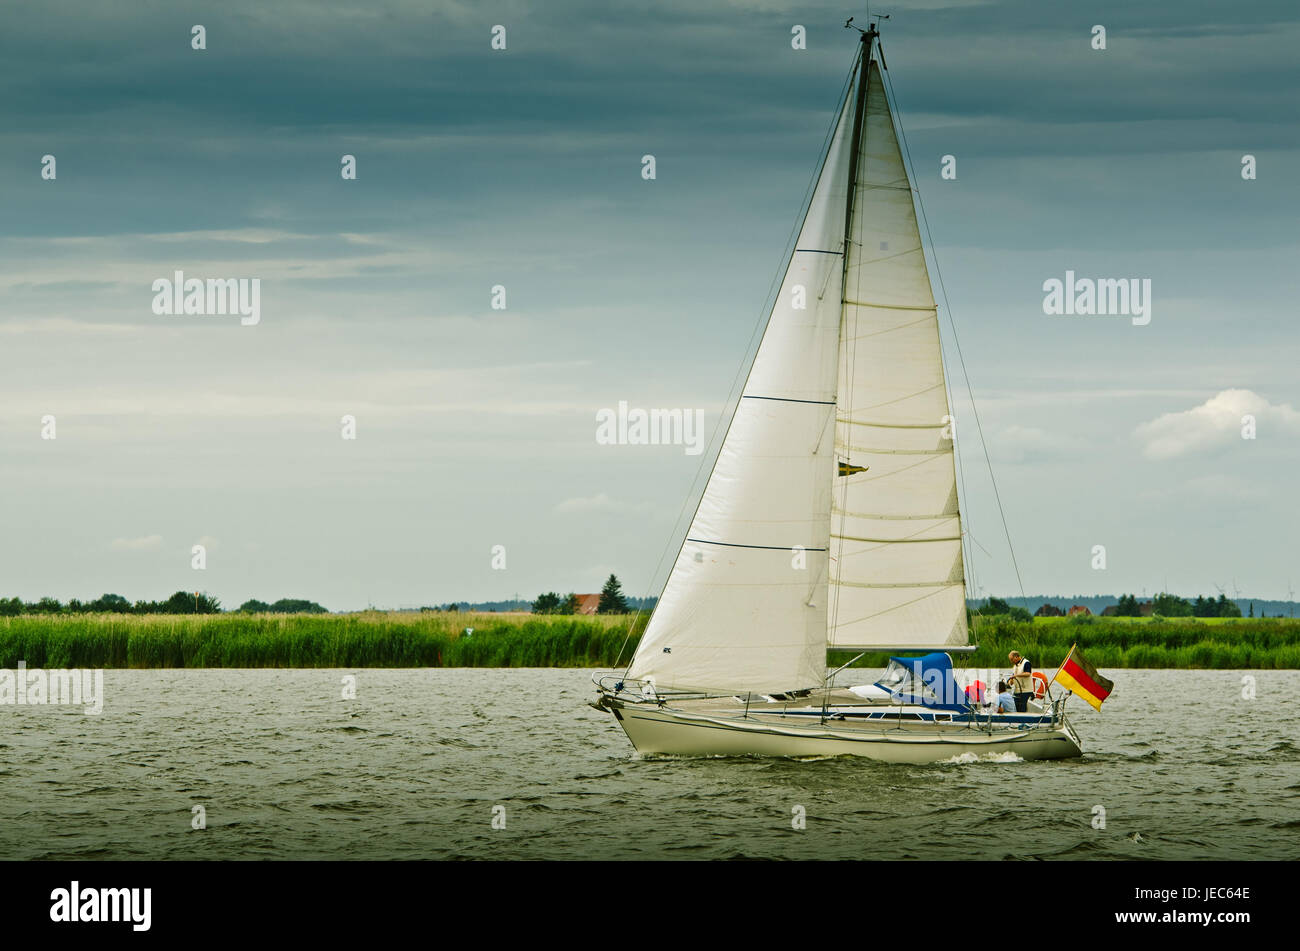 Germany, Hamburg, the Elbe, container ship, sailboats, Stock Photo